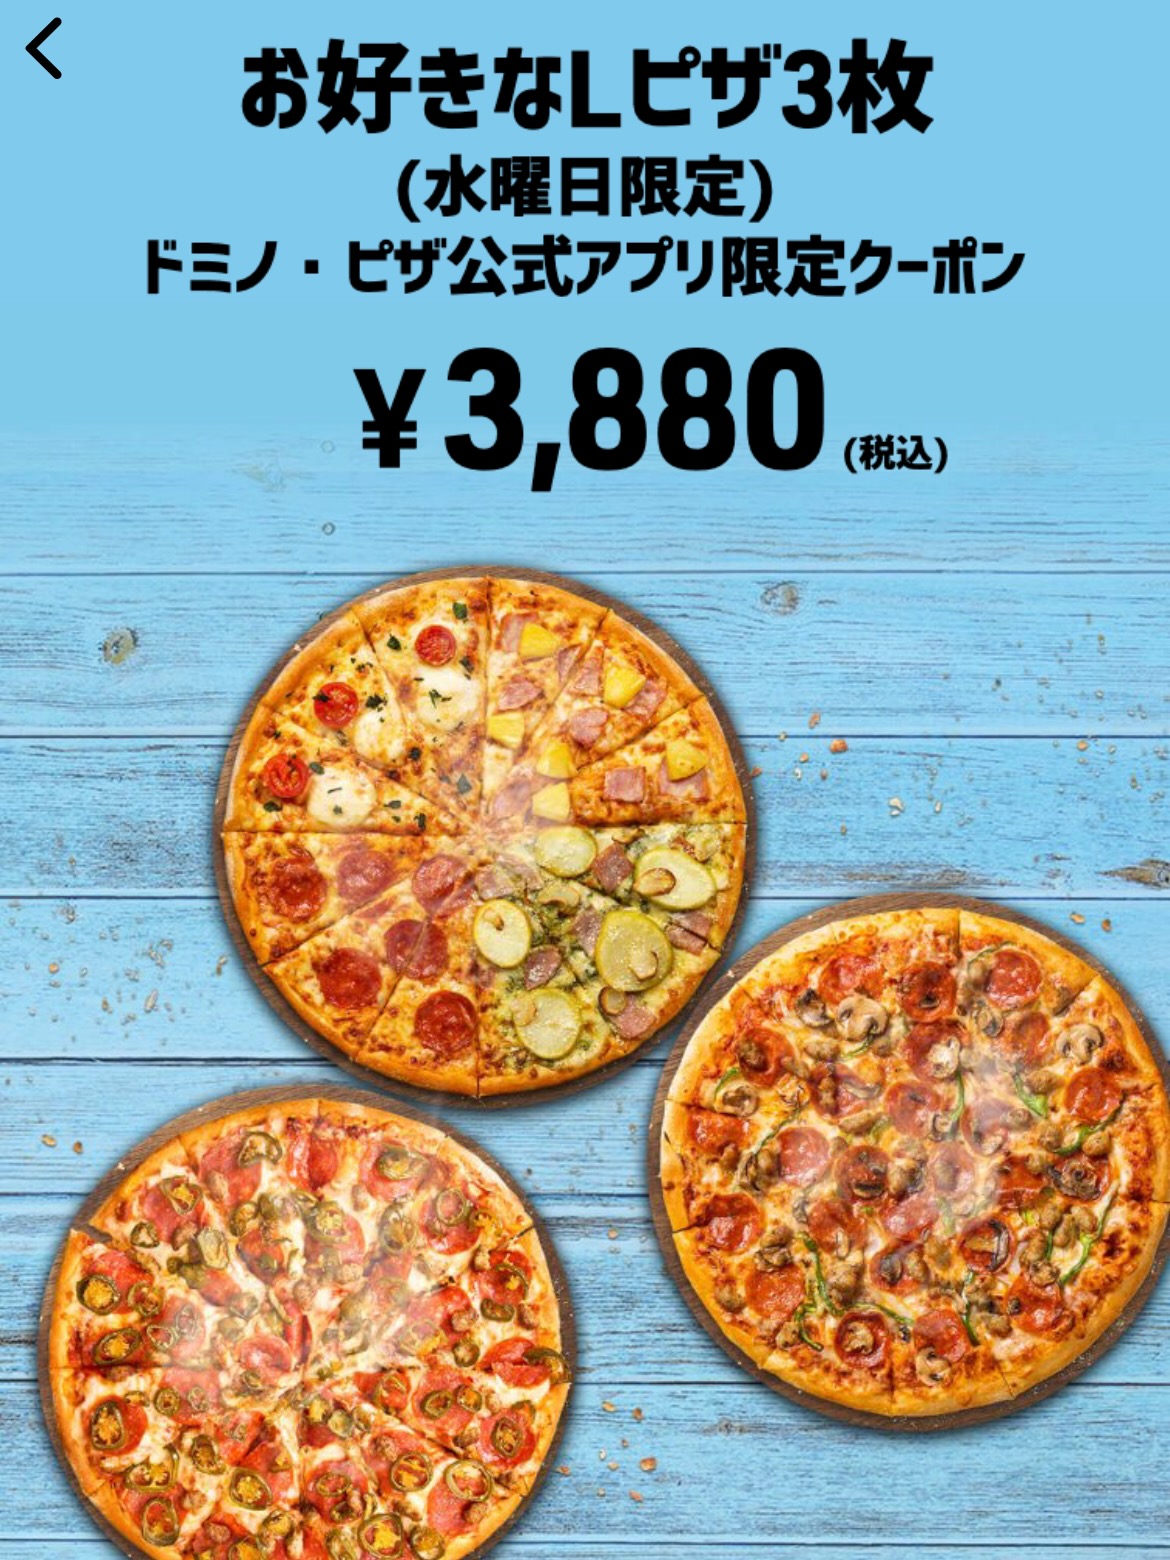 お好きなLピザ3枚 ドミノ・ピザ公式アプリ限定クーポン